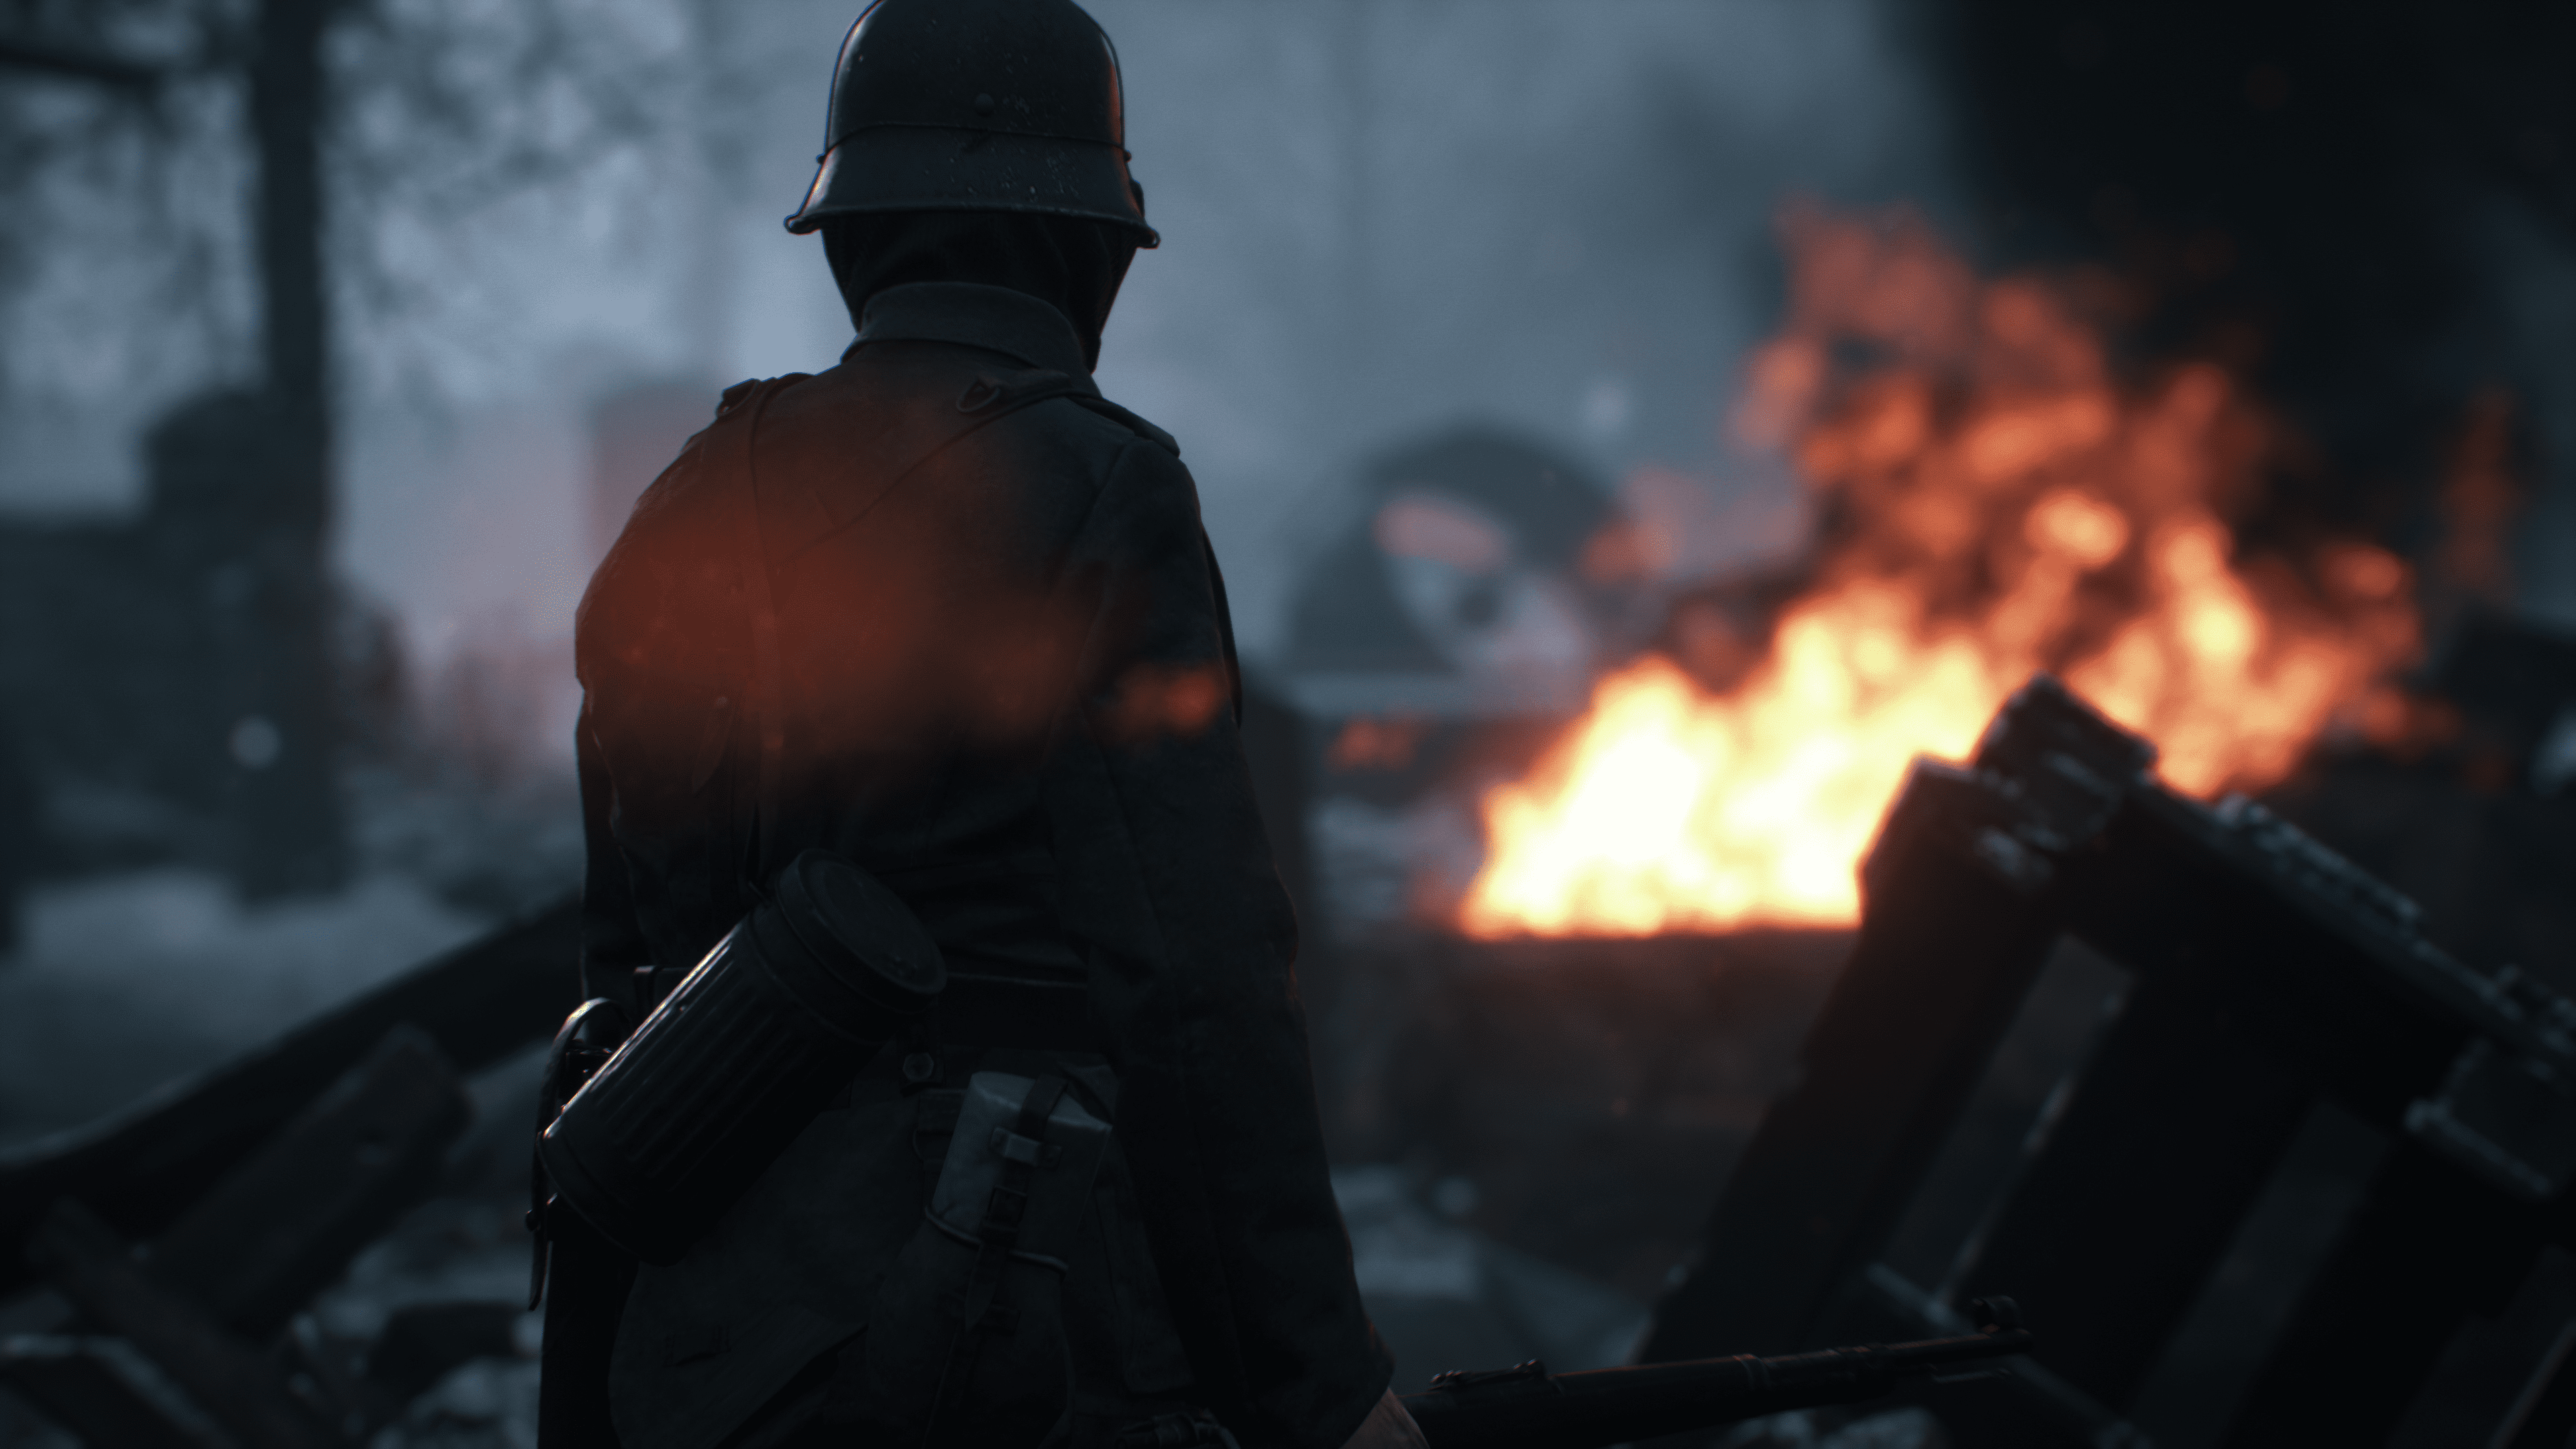 二战战略小队射击游戏《人间地狱》7.27晚9点正式发售